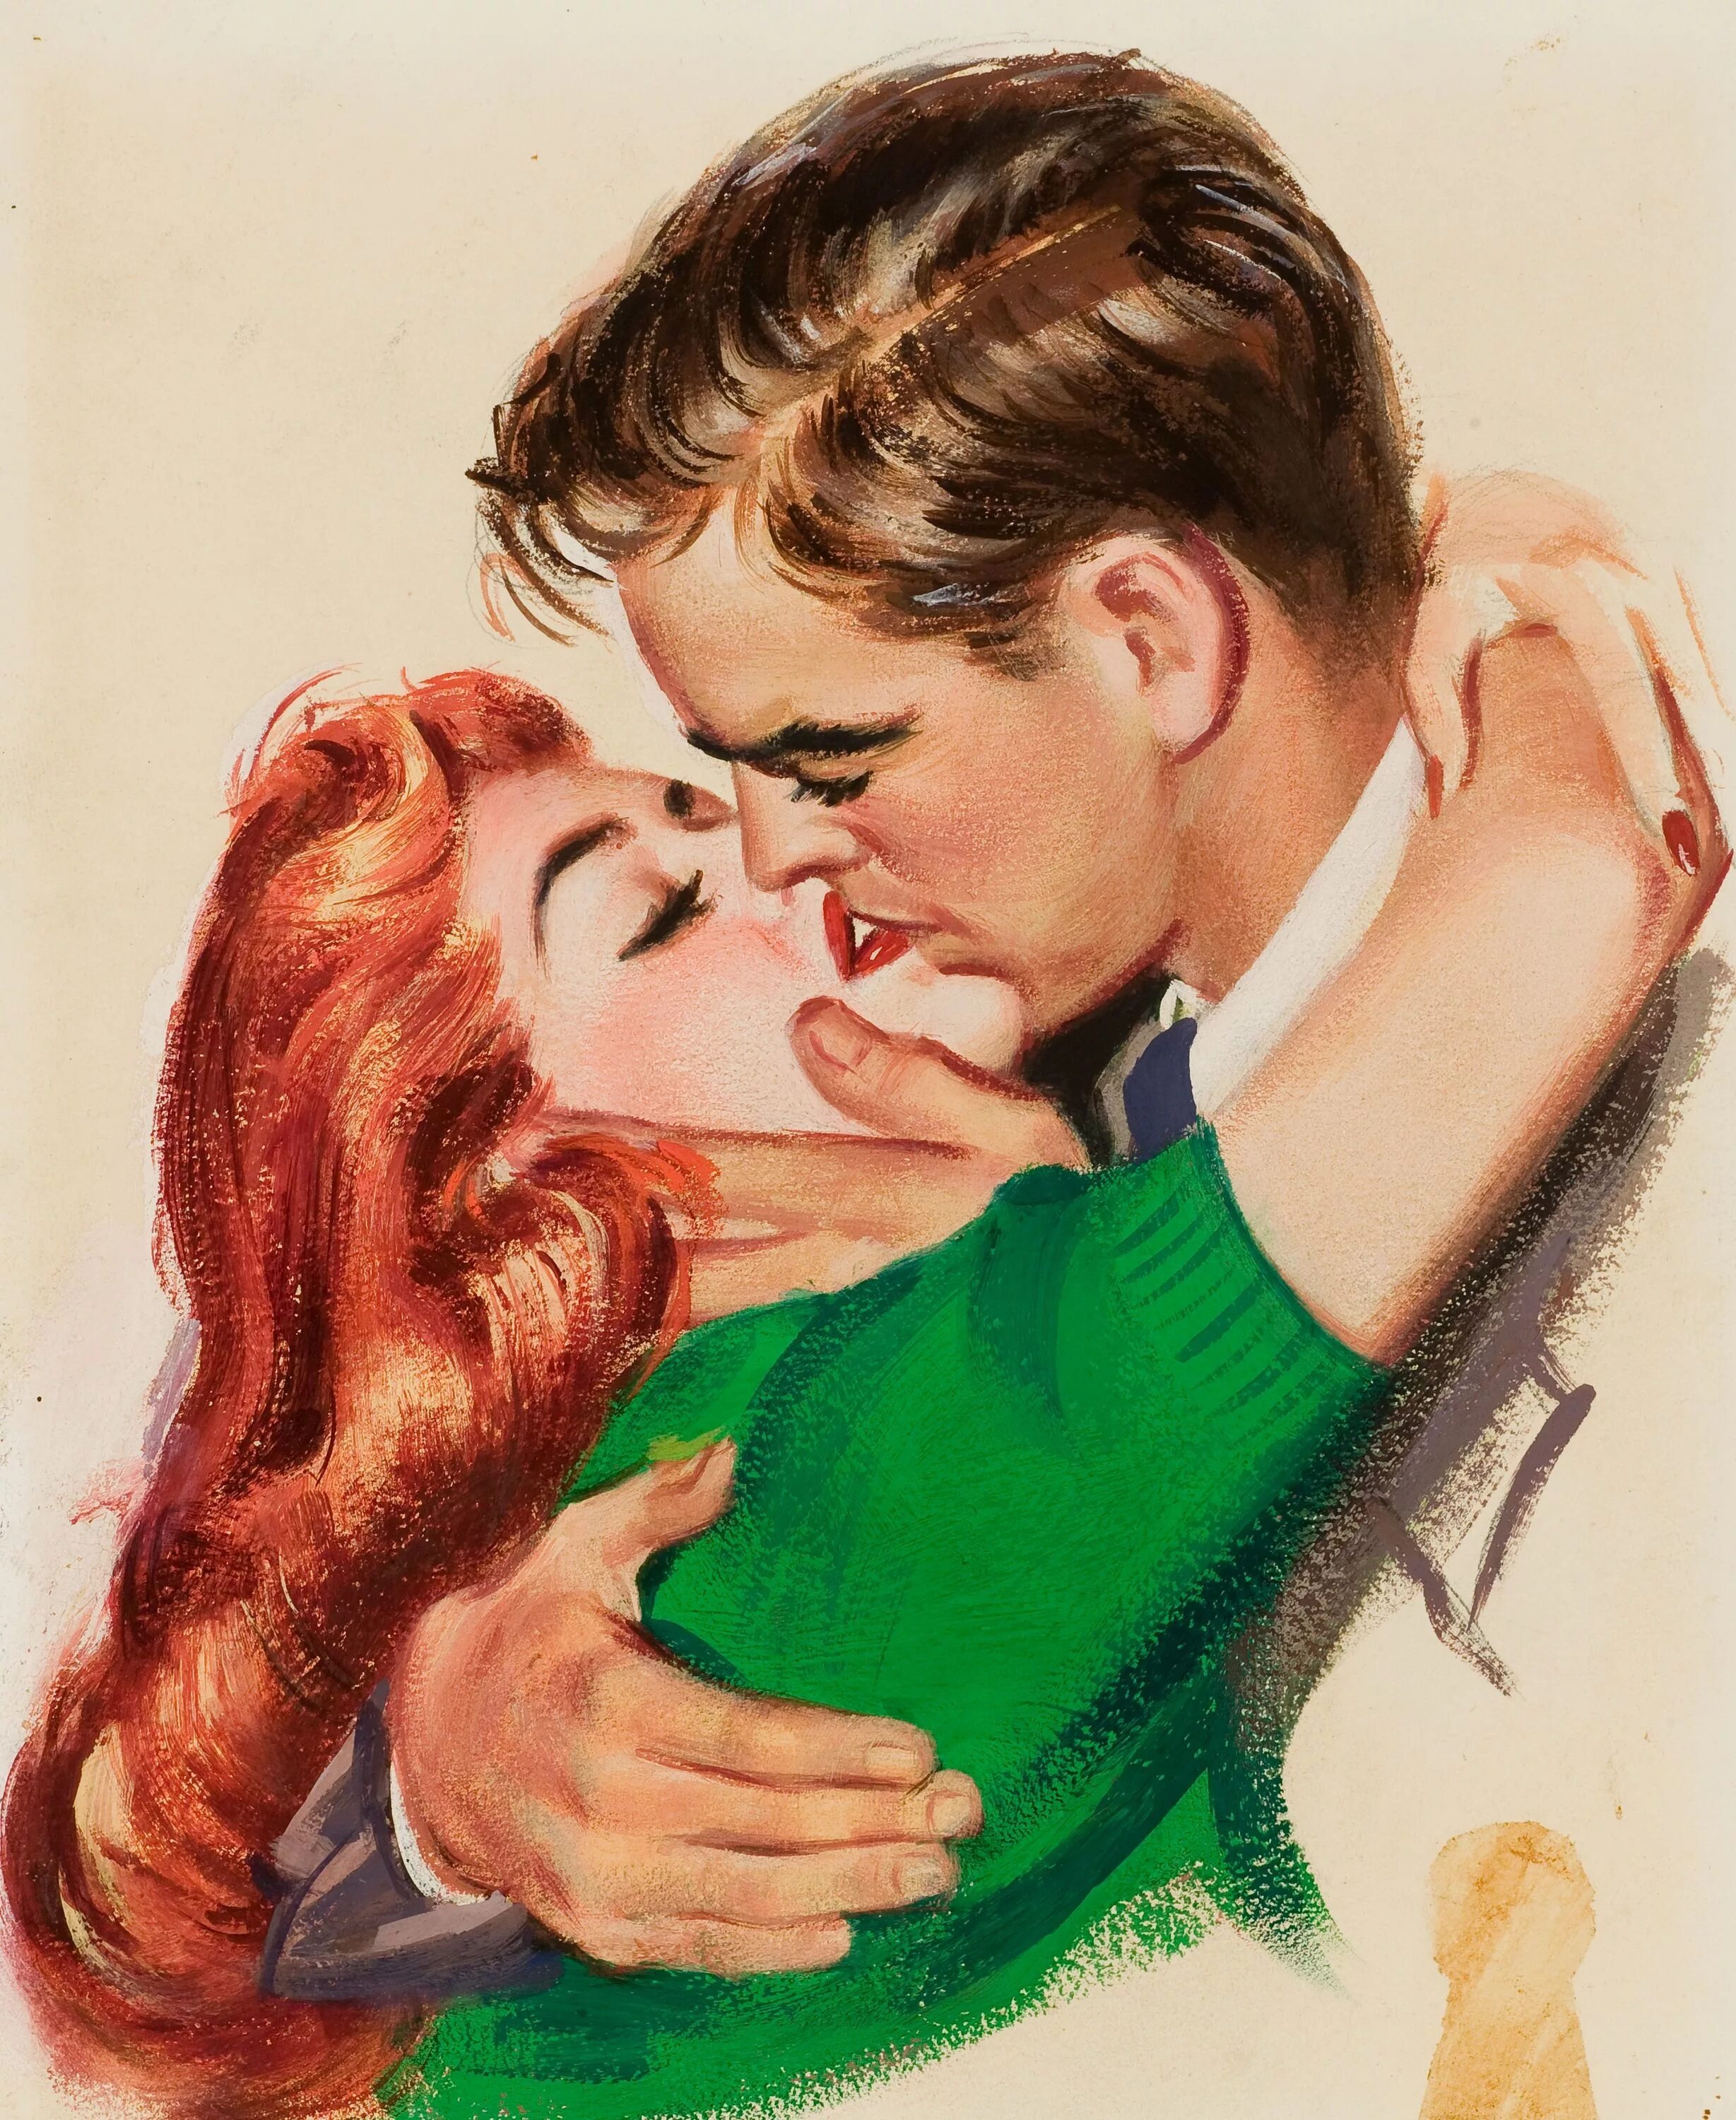 Поцеловать женскую. Иллюстратор: Джон Уиткомб. Джон Уиткомб картины. Джон Уиткомб иллюстрации. Пин ап мужчина и женщина.